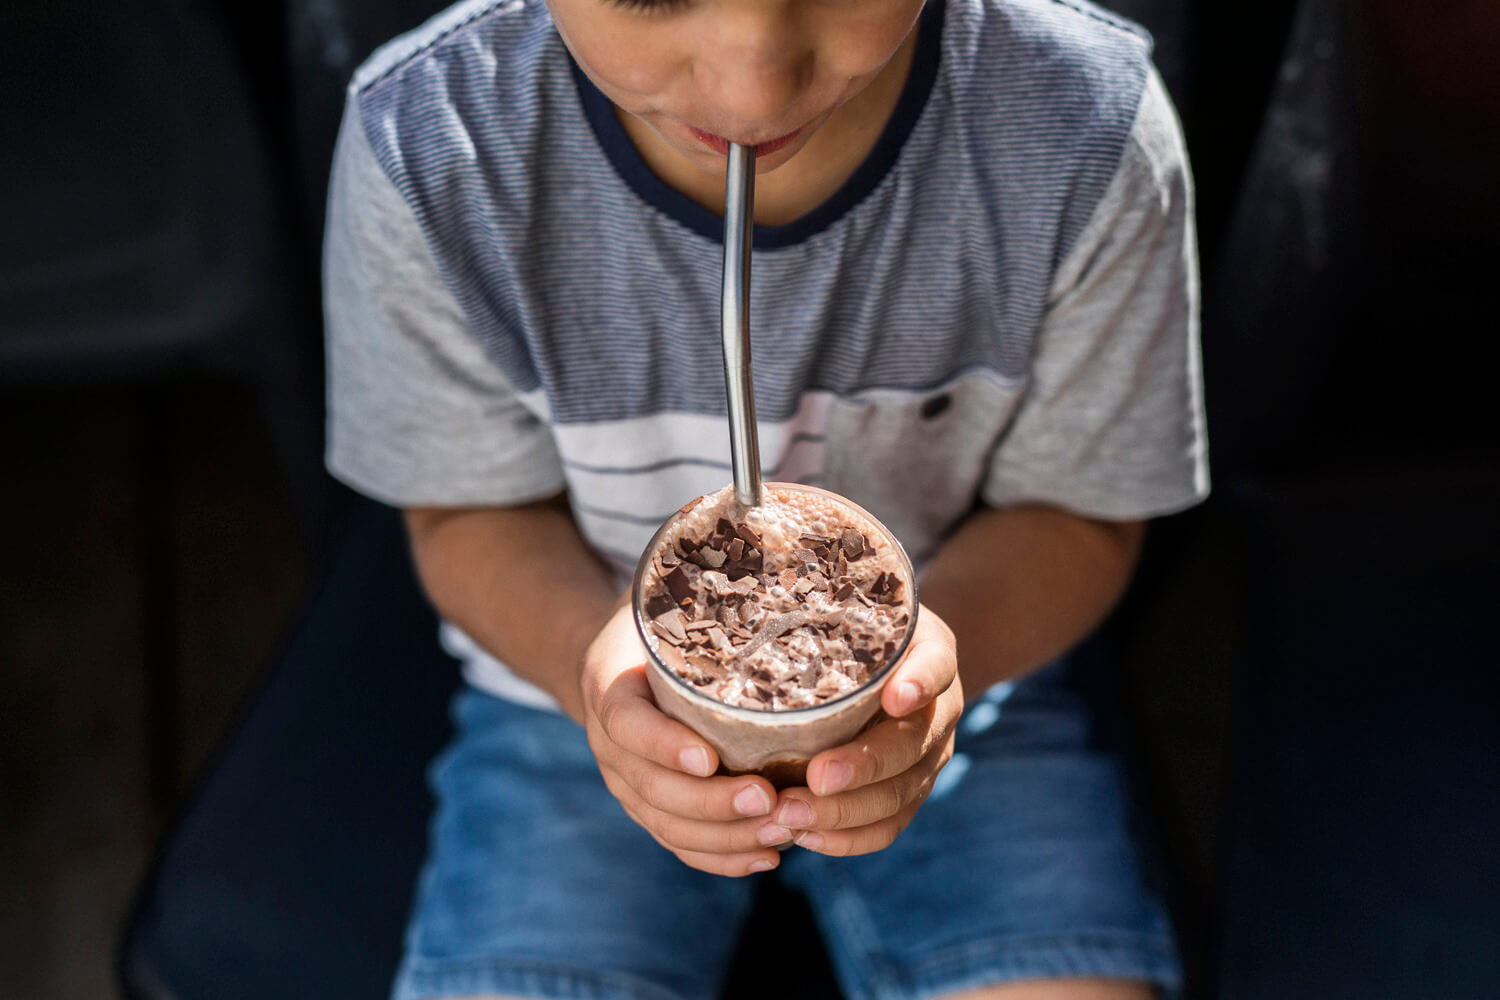 Boy sipping a milkshake through a metal straw